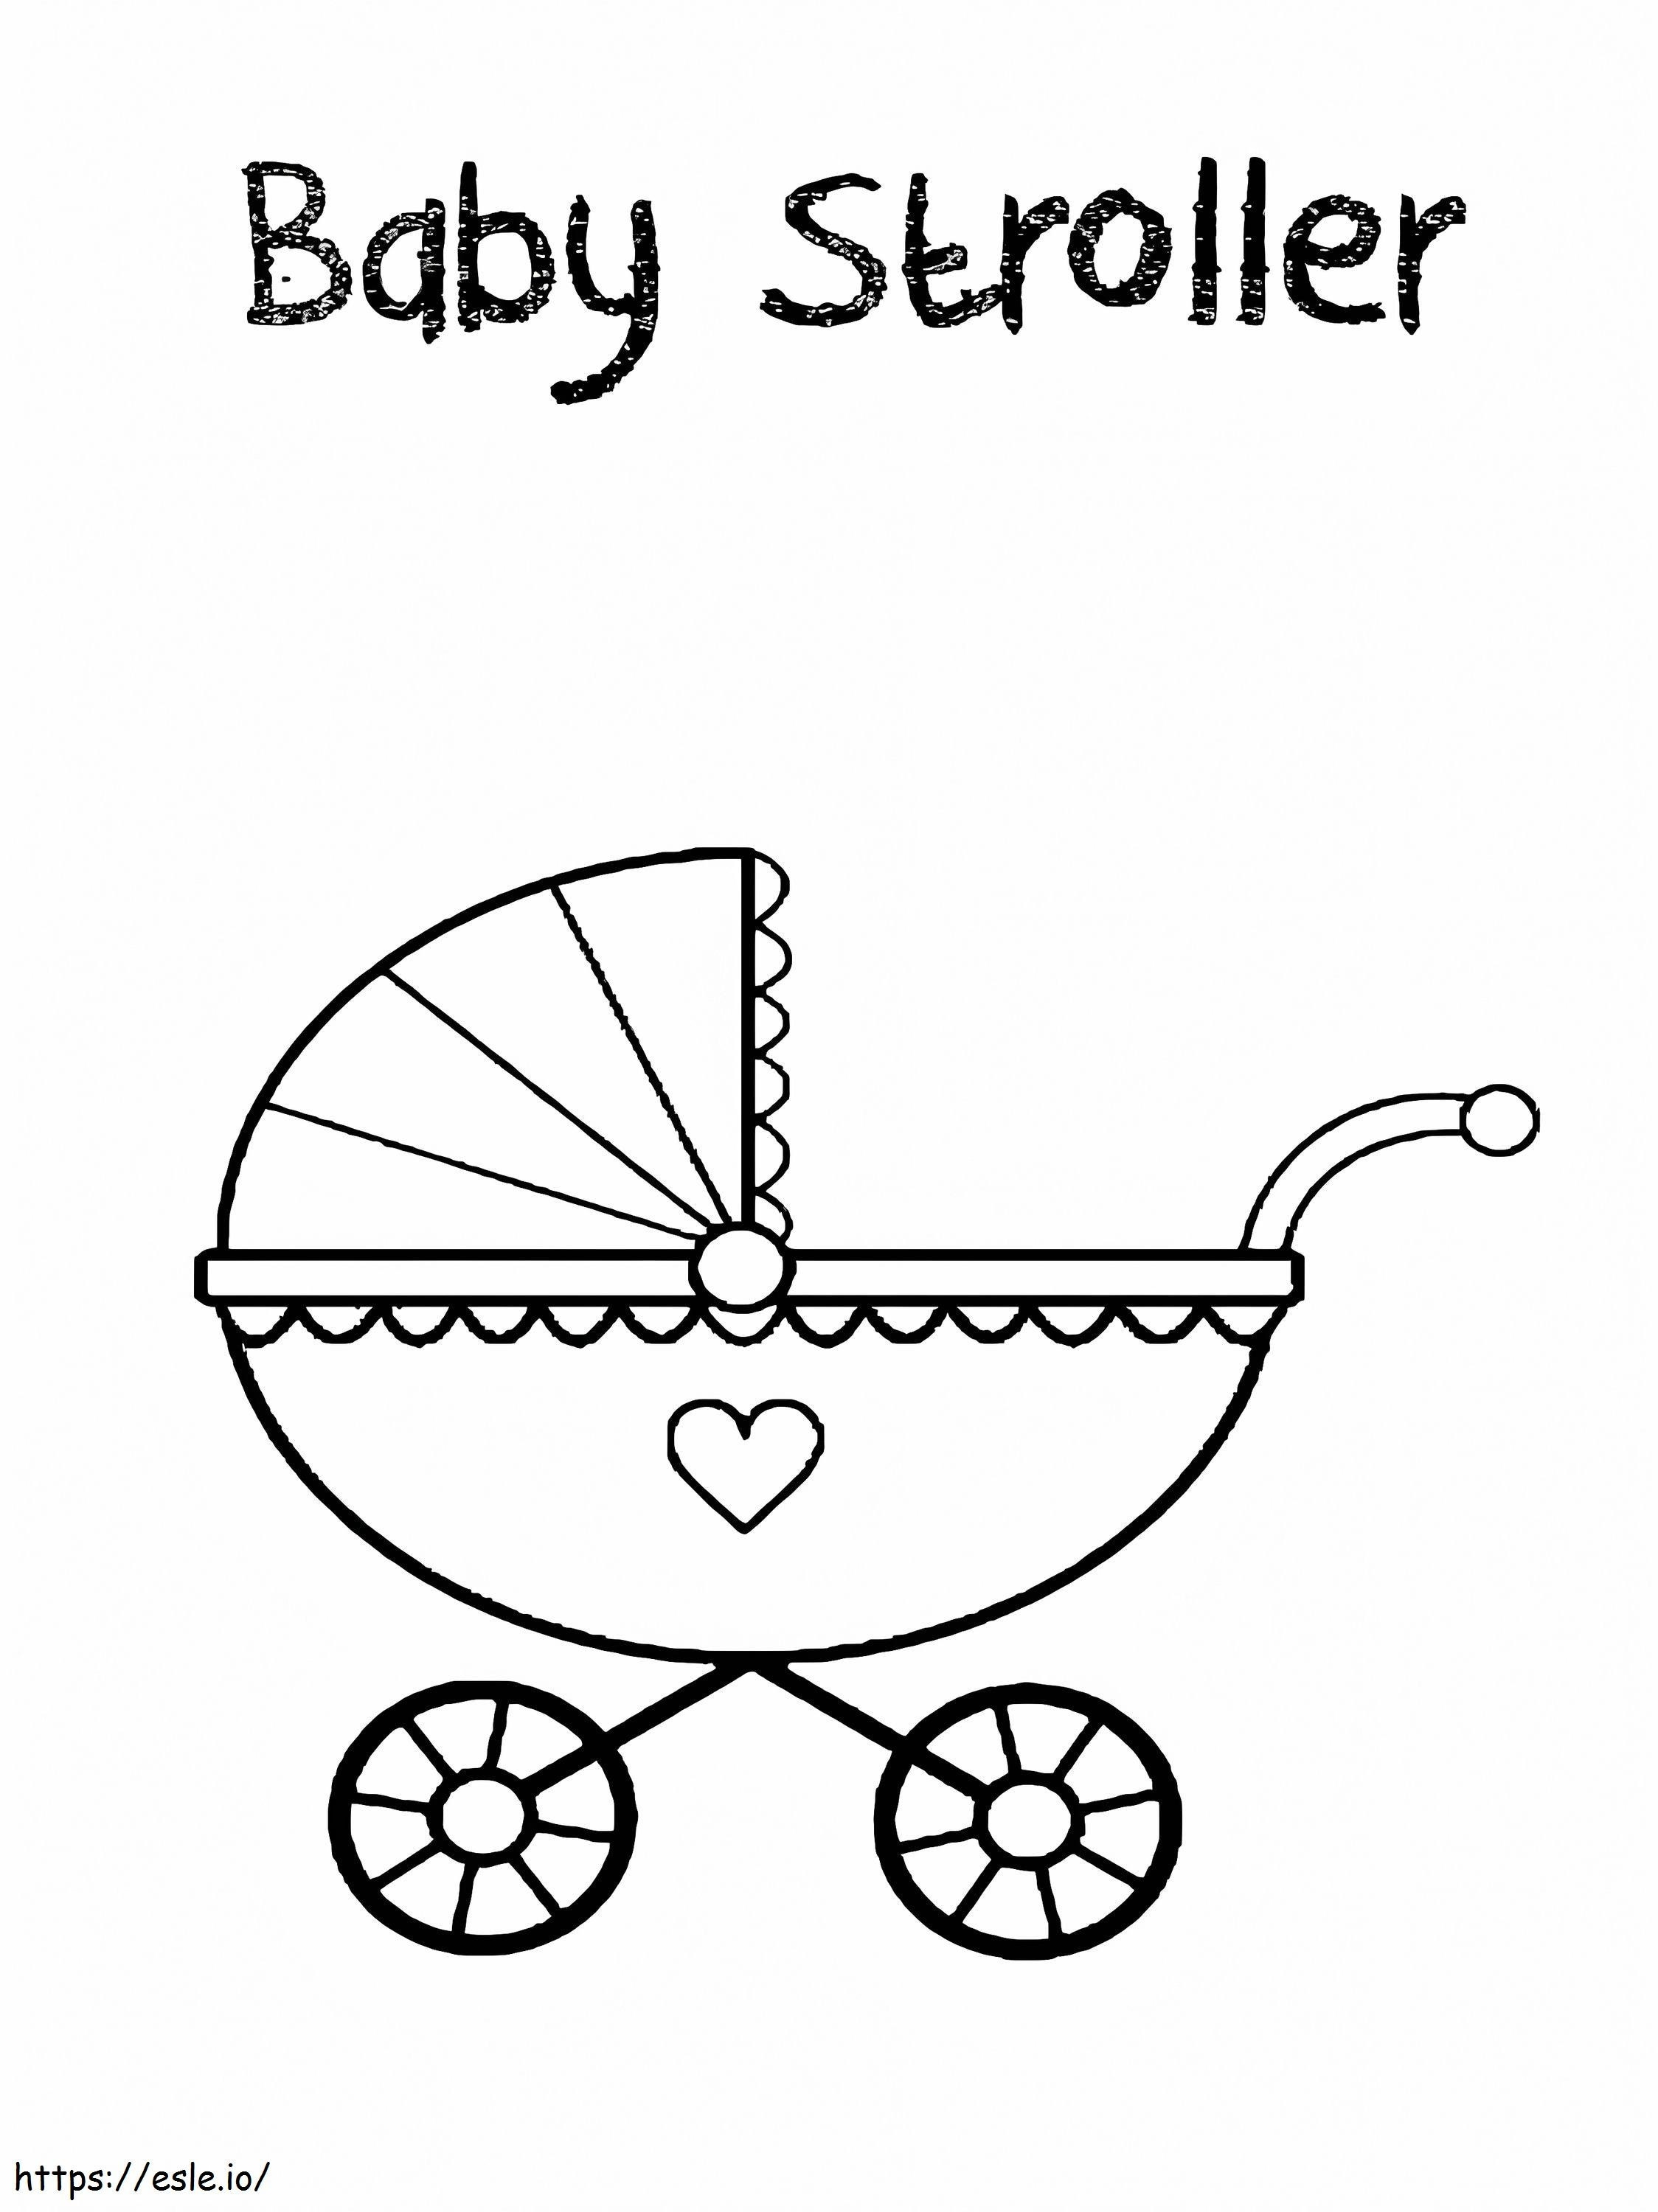 Desenho para colorir de carrinho de bebê A0Oa2Hgs para colorir